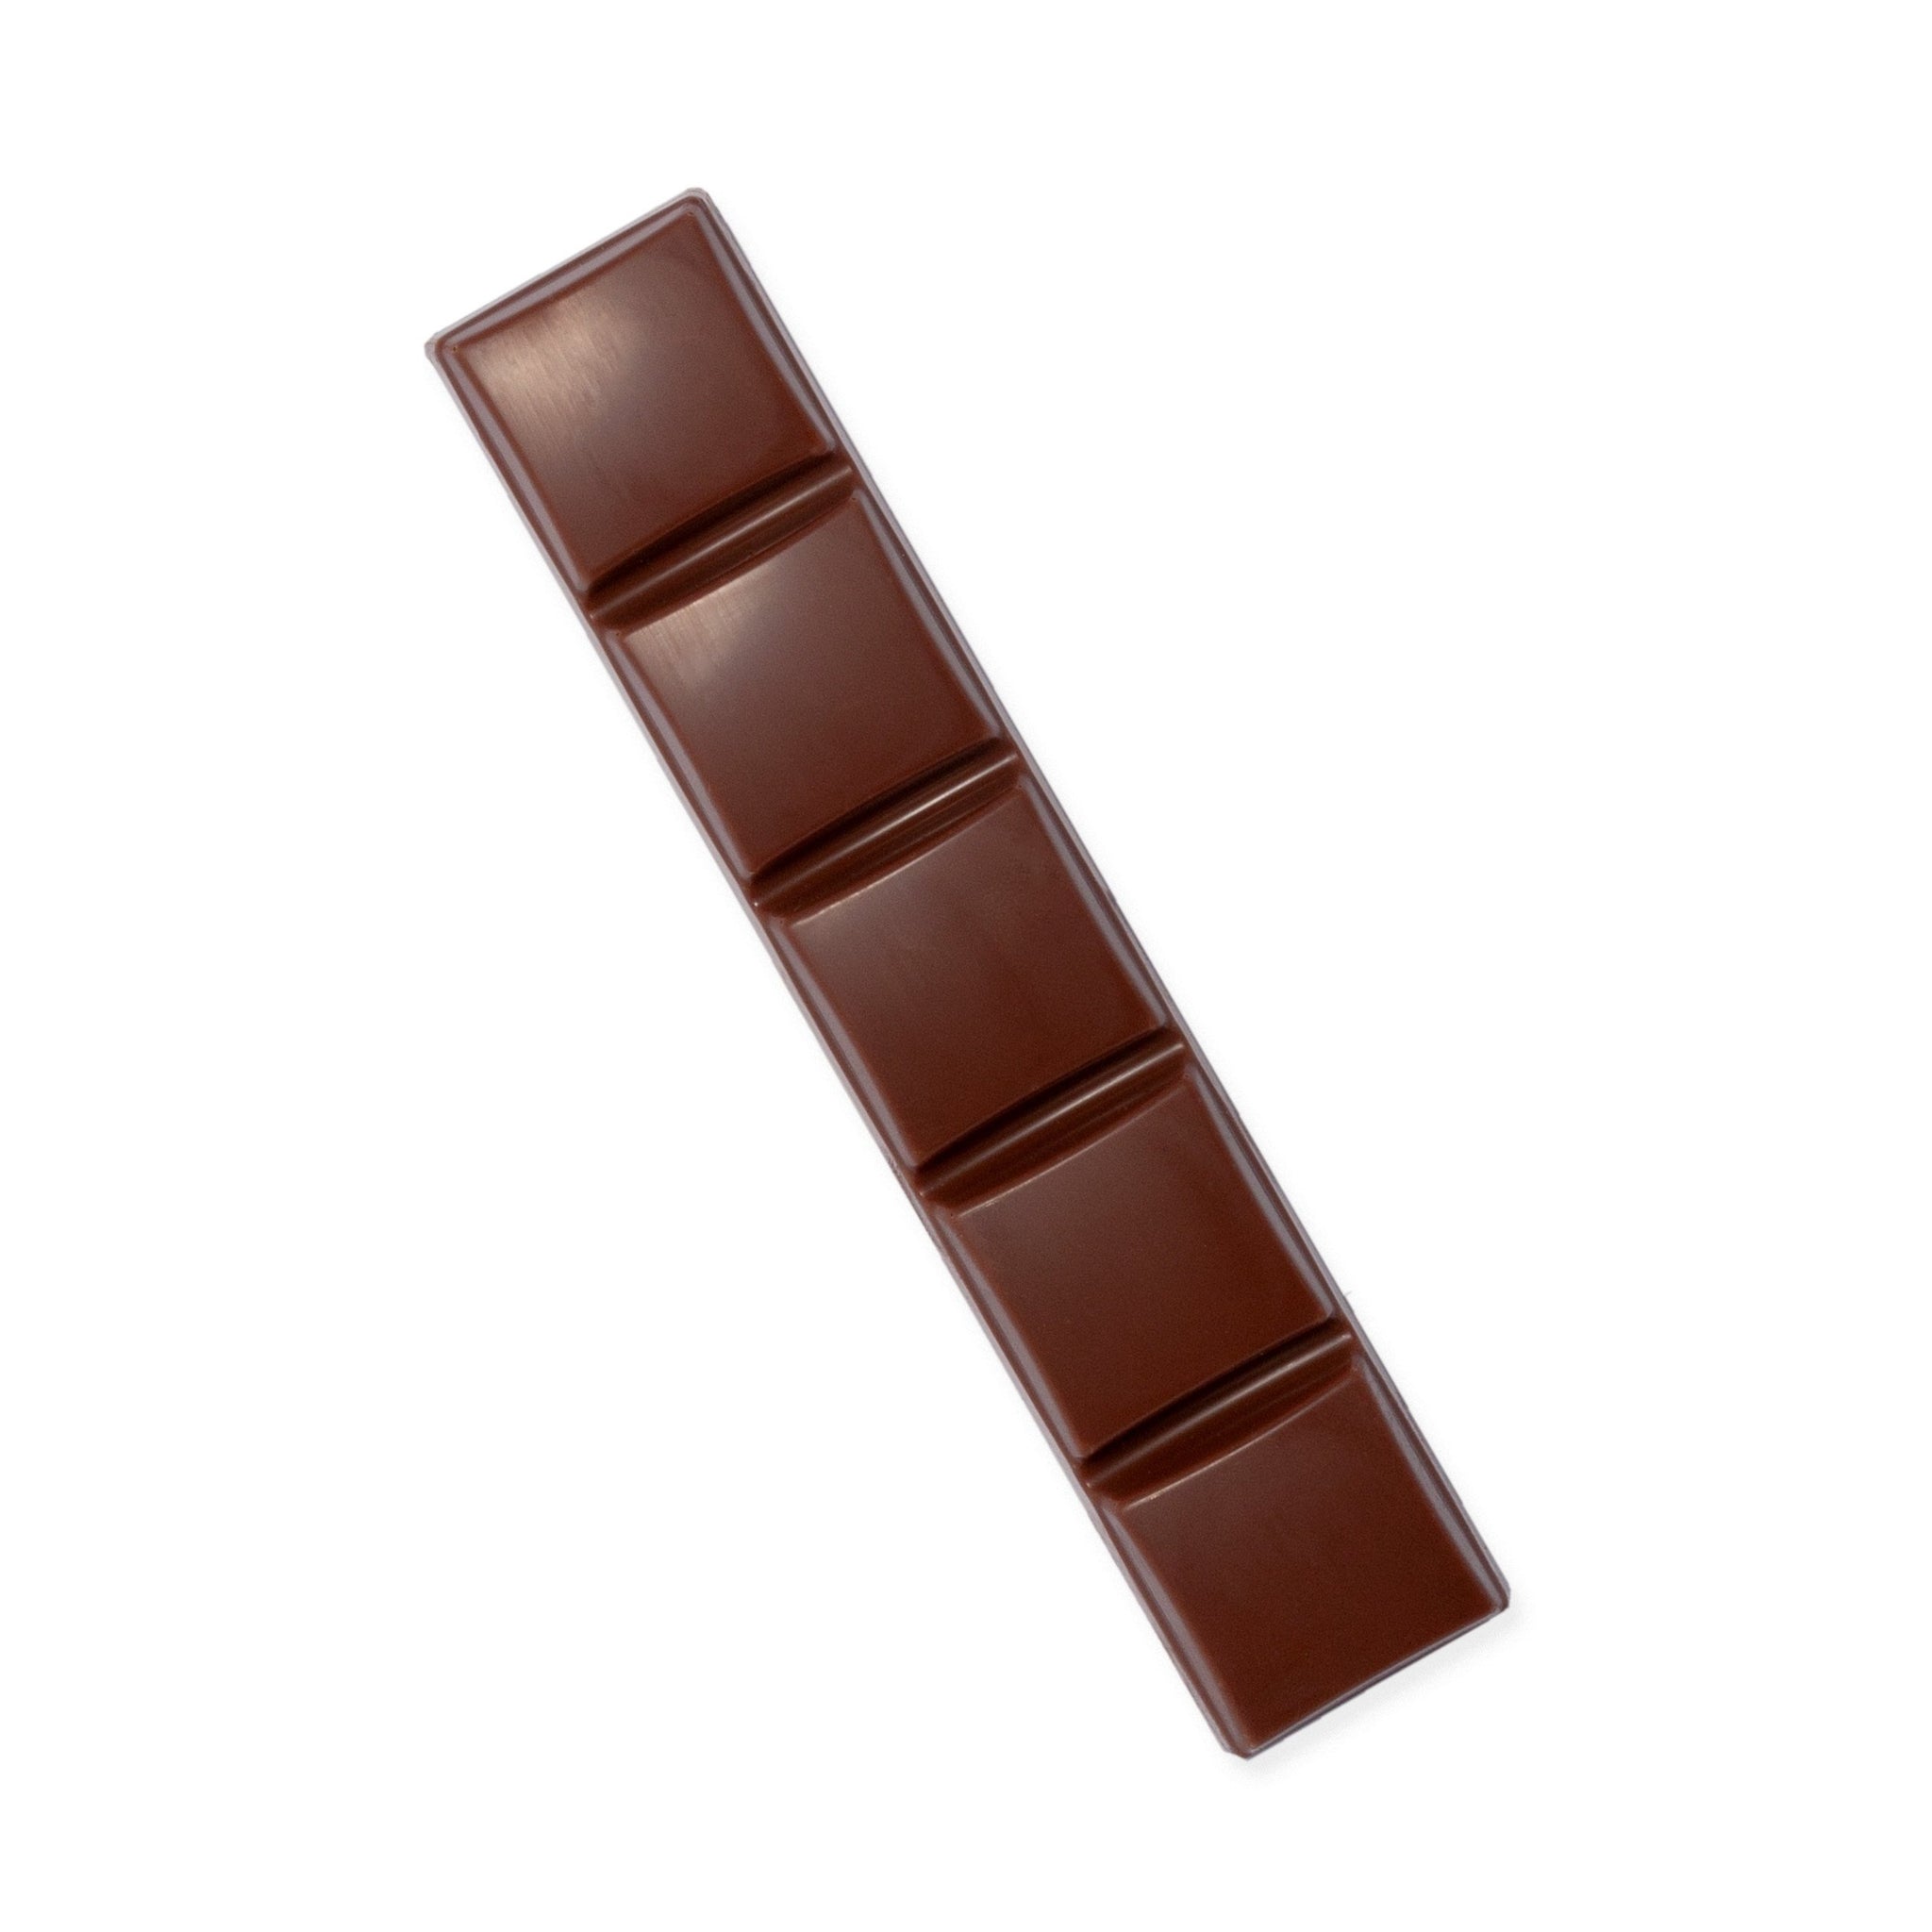 Schokoladenriegel mit 35% Kakaoanteil und ganzen Haselnüssen